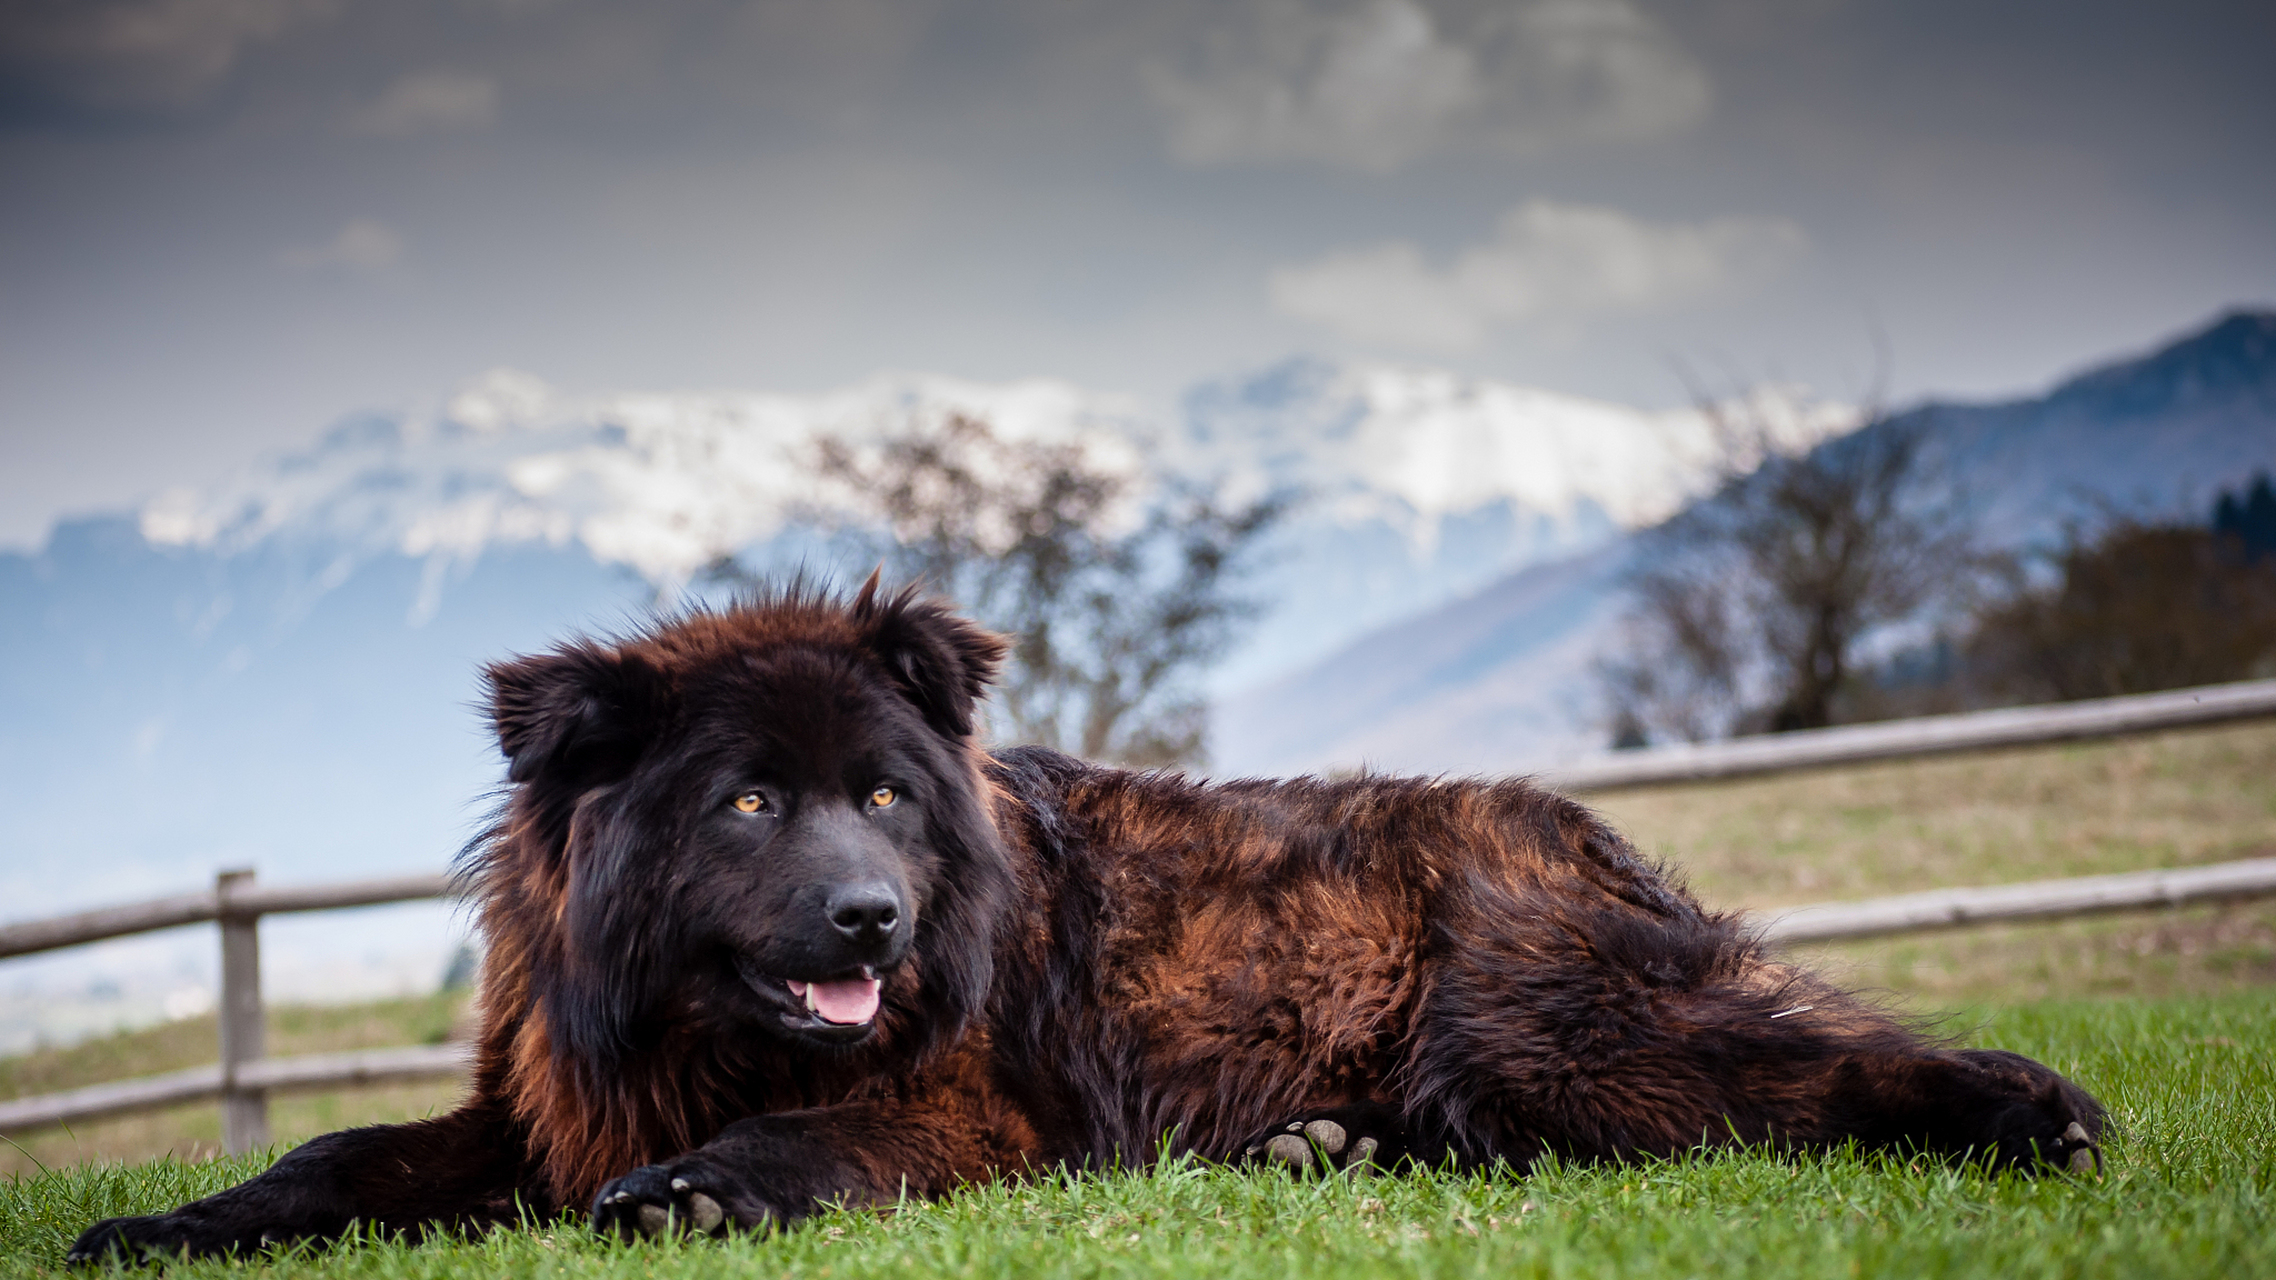 纽芬兰犬是一种非常友好和活泼的犬种,体形高大,胸深,身体长而结实